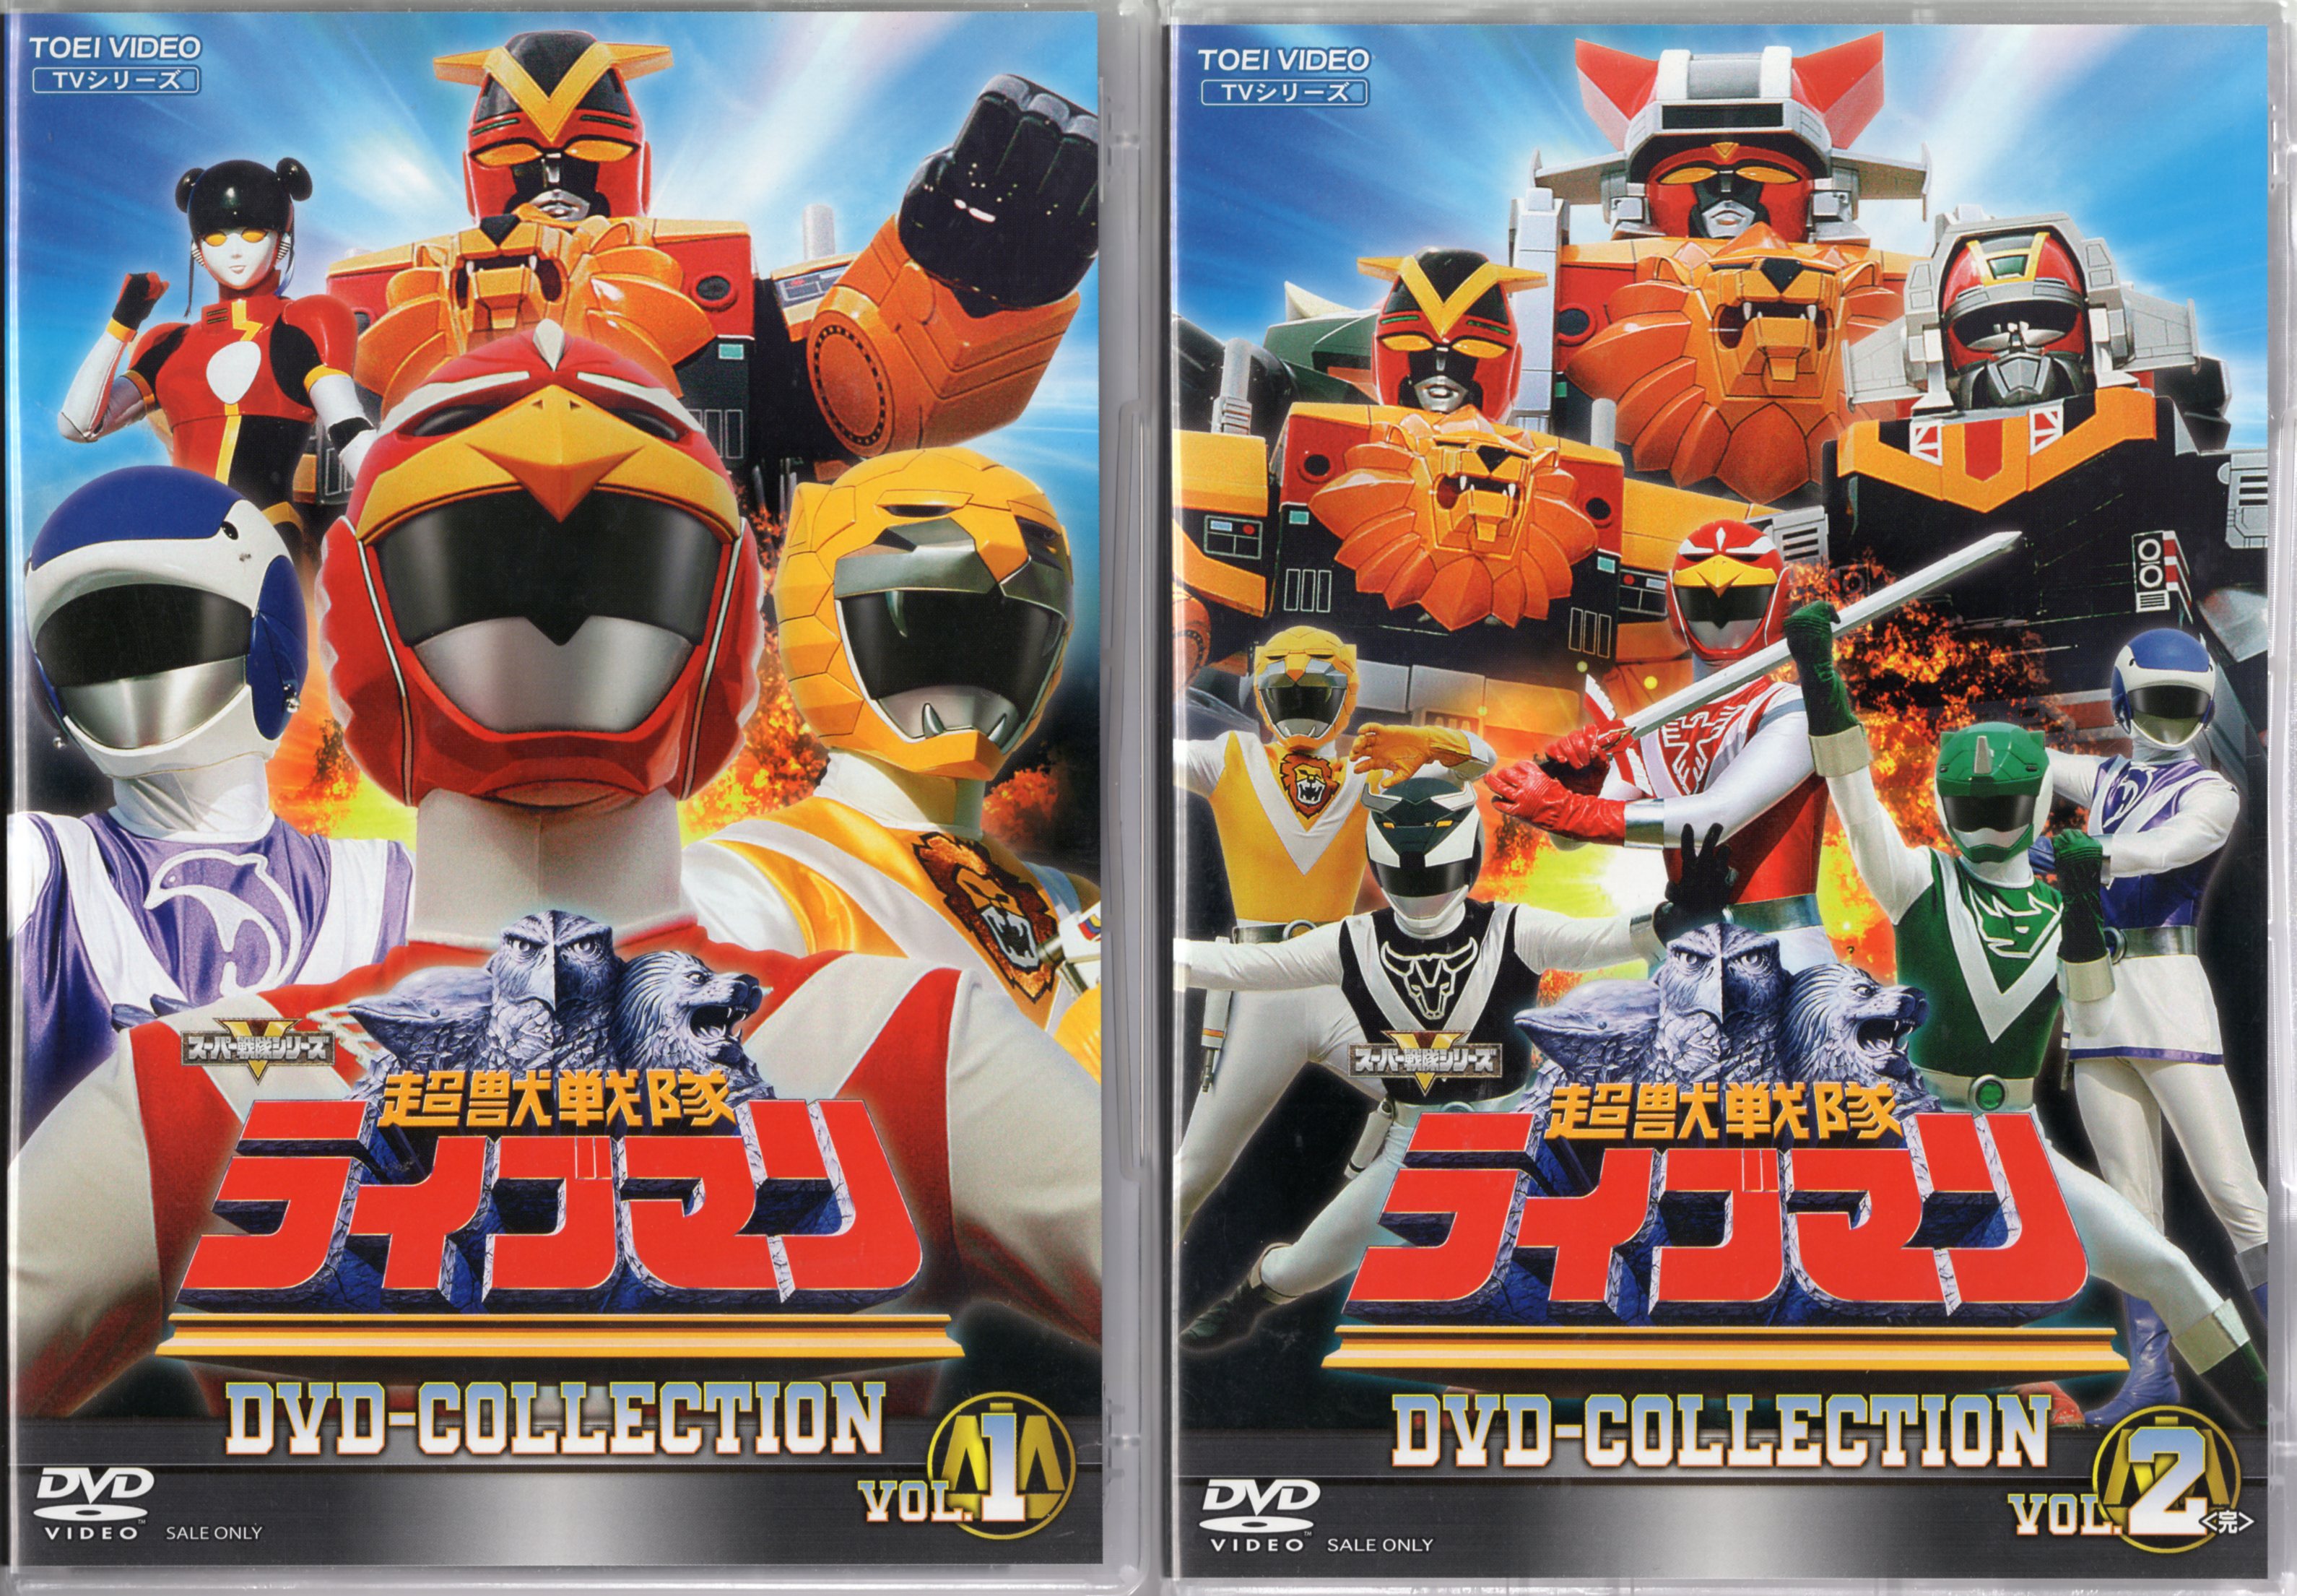 特撮DVD 超獣戦隊ライブマン DVD COLLECTION 全2BOX セット